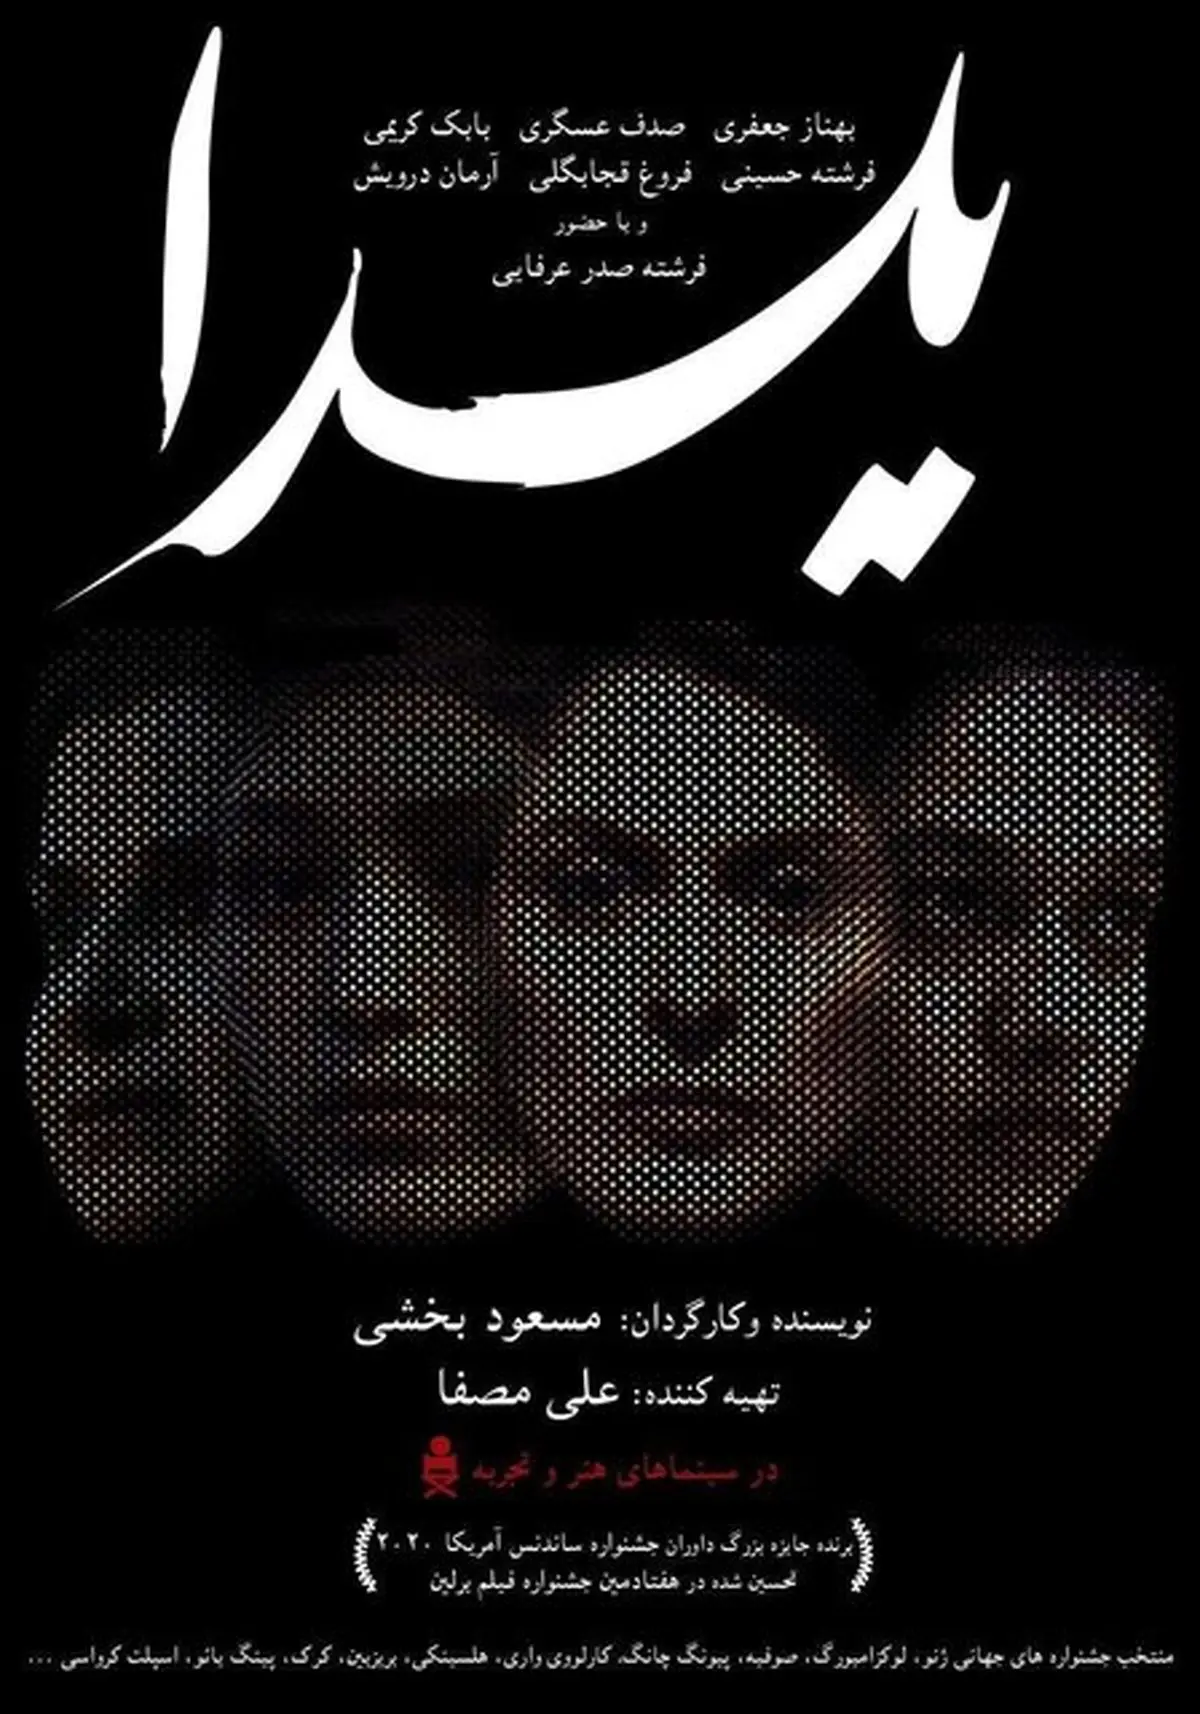 یلدا| جدیدترین خبر از "یلدا"ی ایرانی در فرانسه